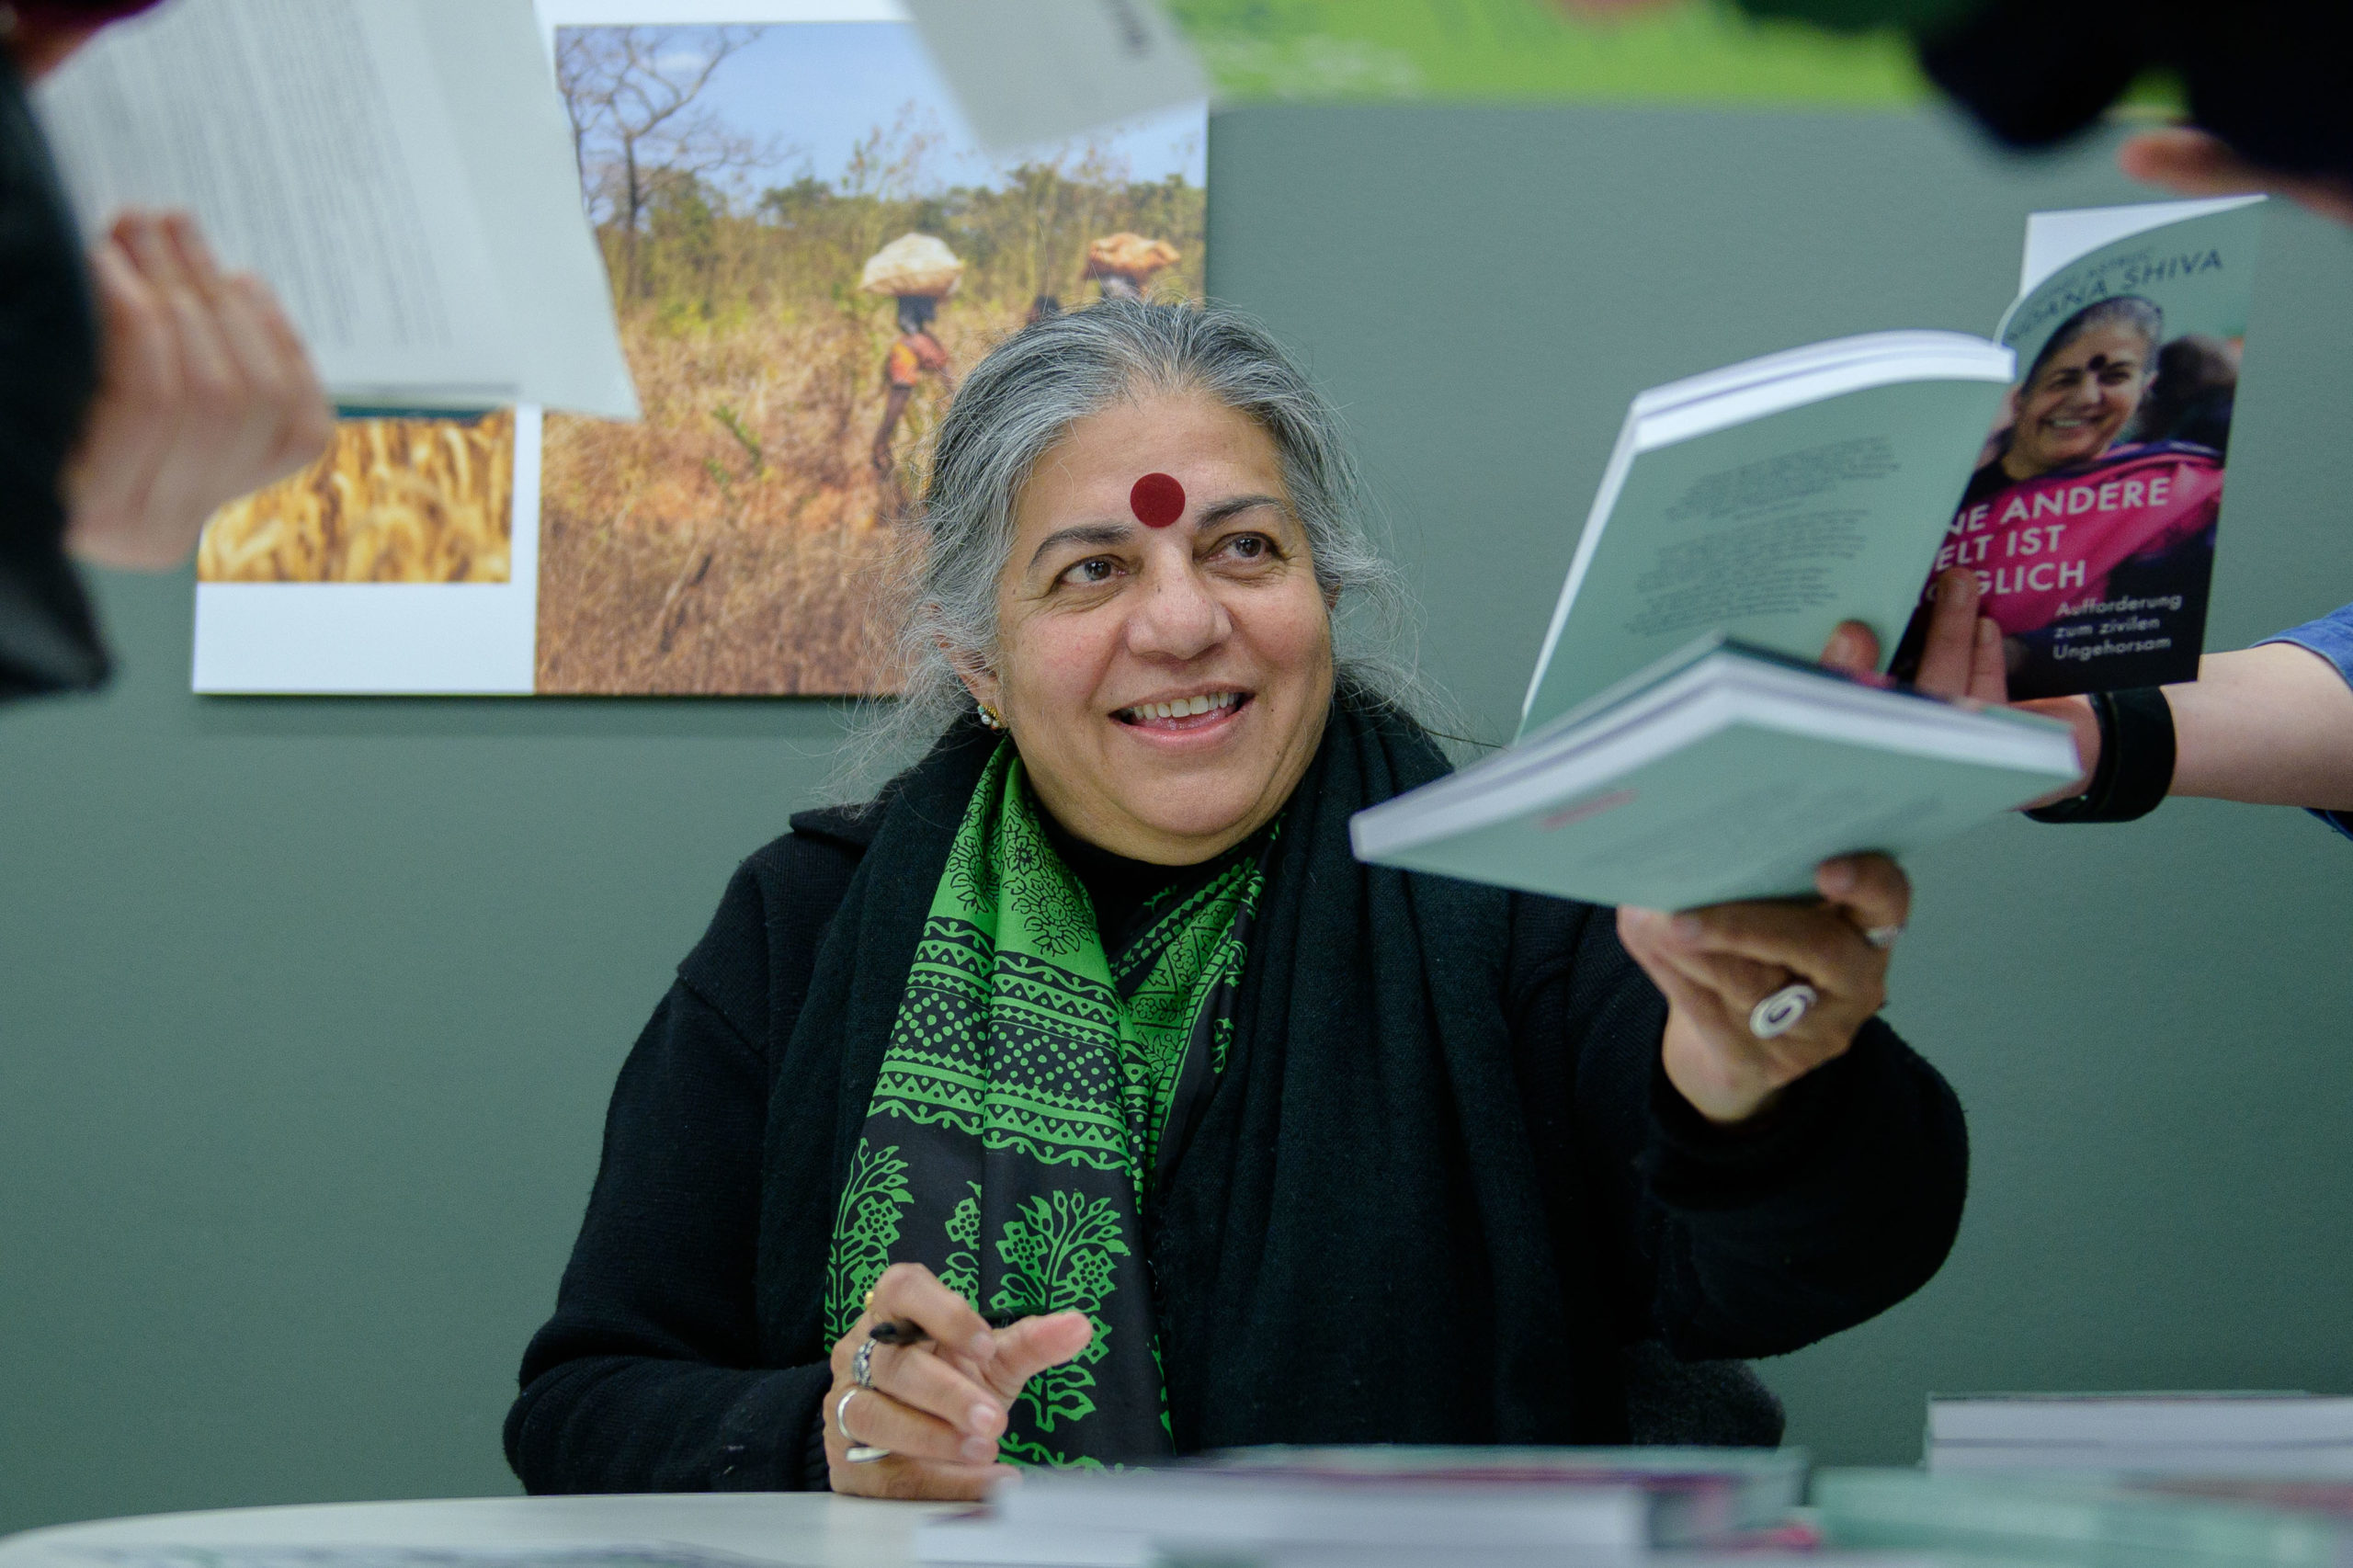 Foto da filósofa Vandana Shiva, vestida de preto com um chale com detalhes verdes, sentada, entregando o seu livro autografado a alguém durante cerimônia de autógrafos, no lançamento do livro.